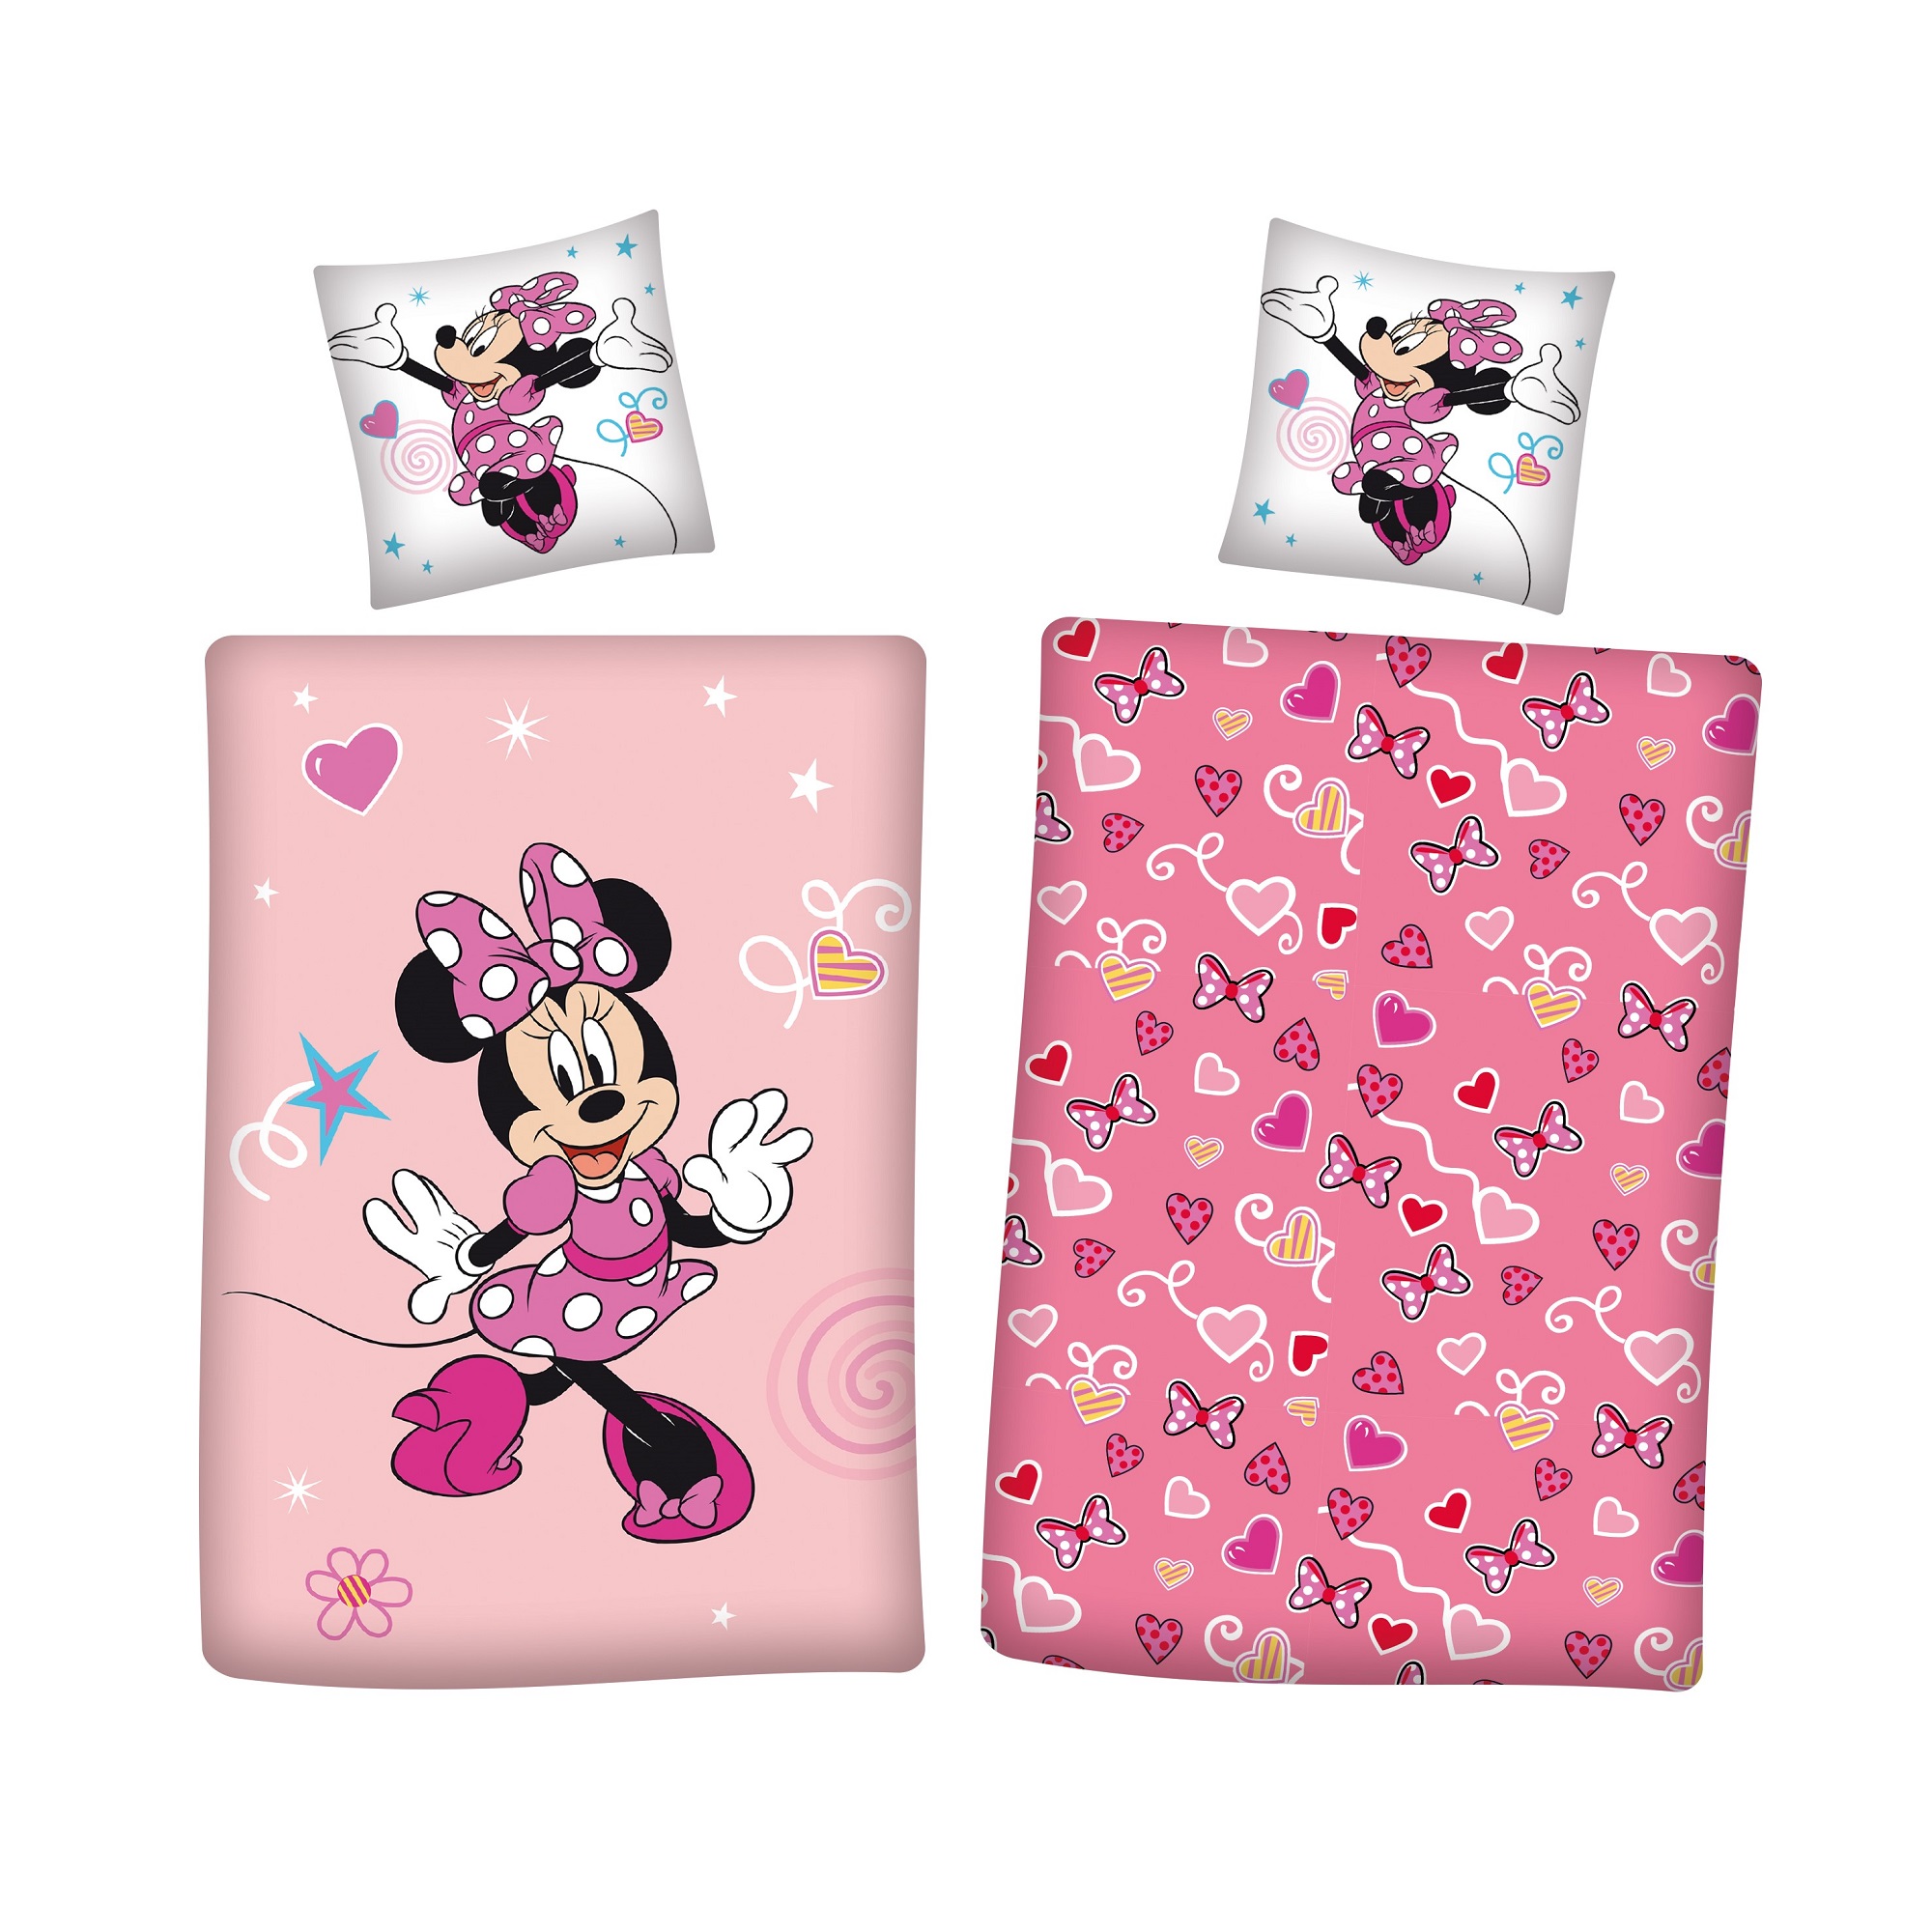 Rosa Minnie Mouse Bettwäsche mit weißen Kopfkissen und Minnie Motiv in Flanell Qualität 135x200 cm